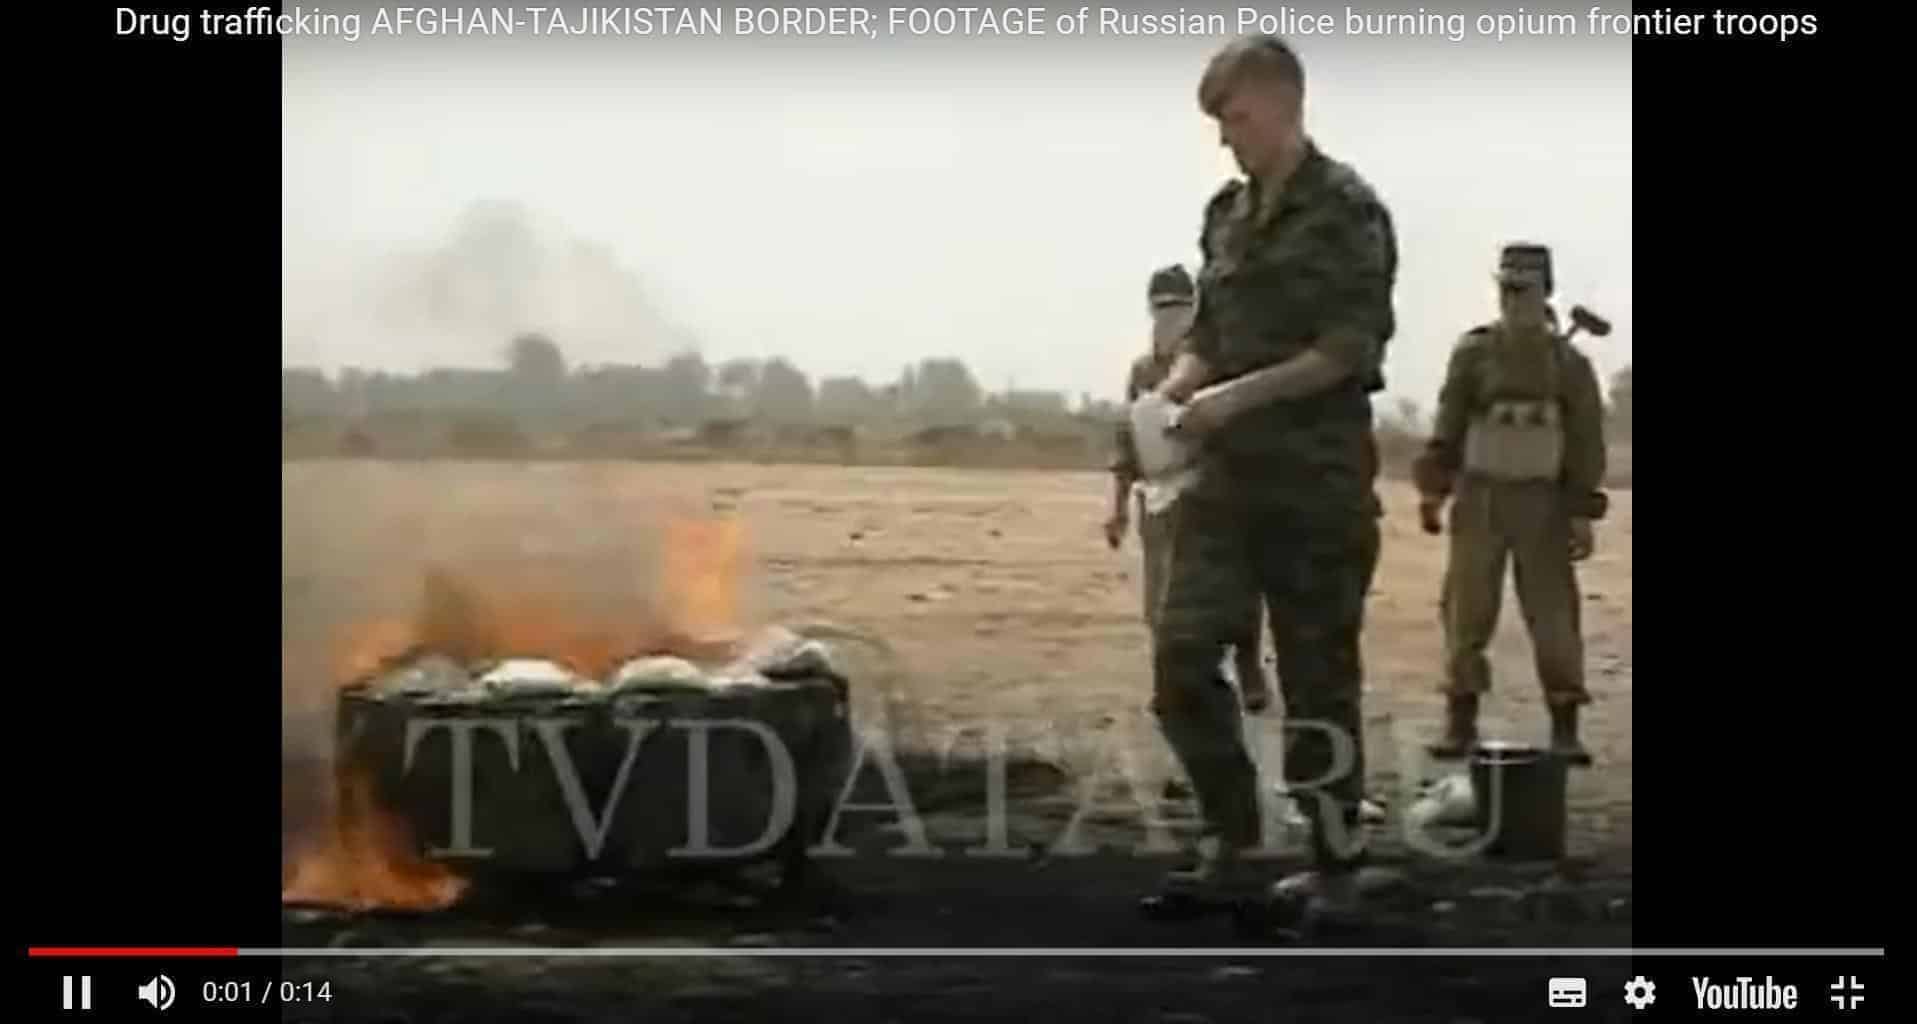 Burning Opium on Tajikistan Border  